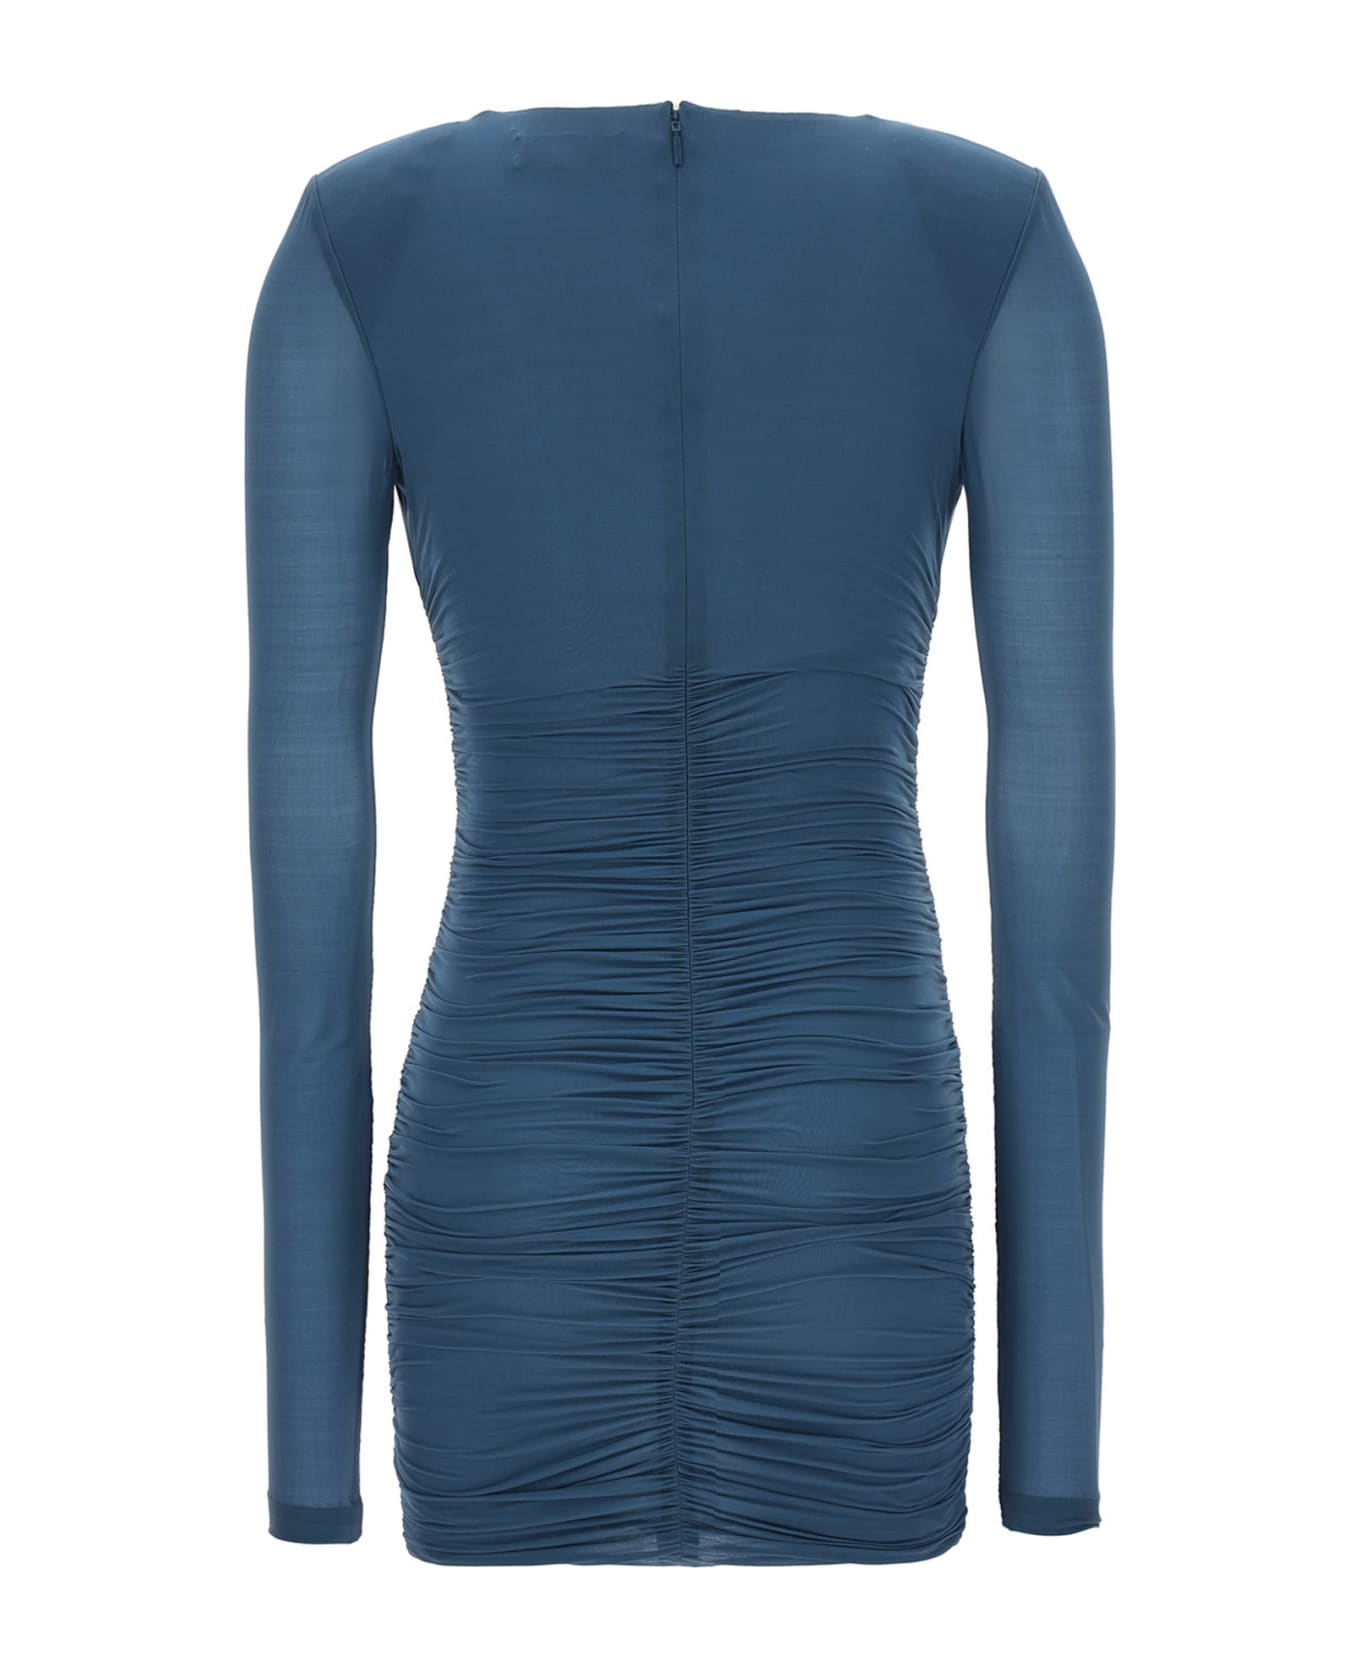 Saint Laurent Draped Jersey Dress - Blue